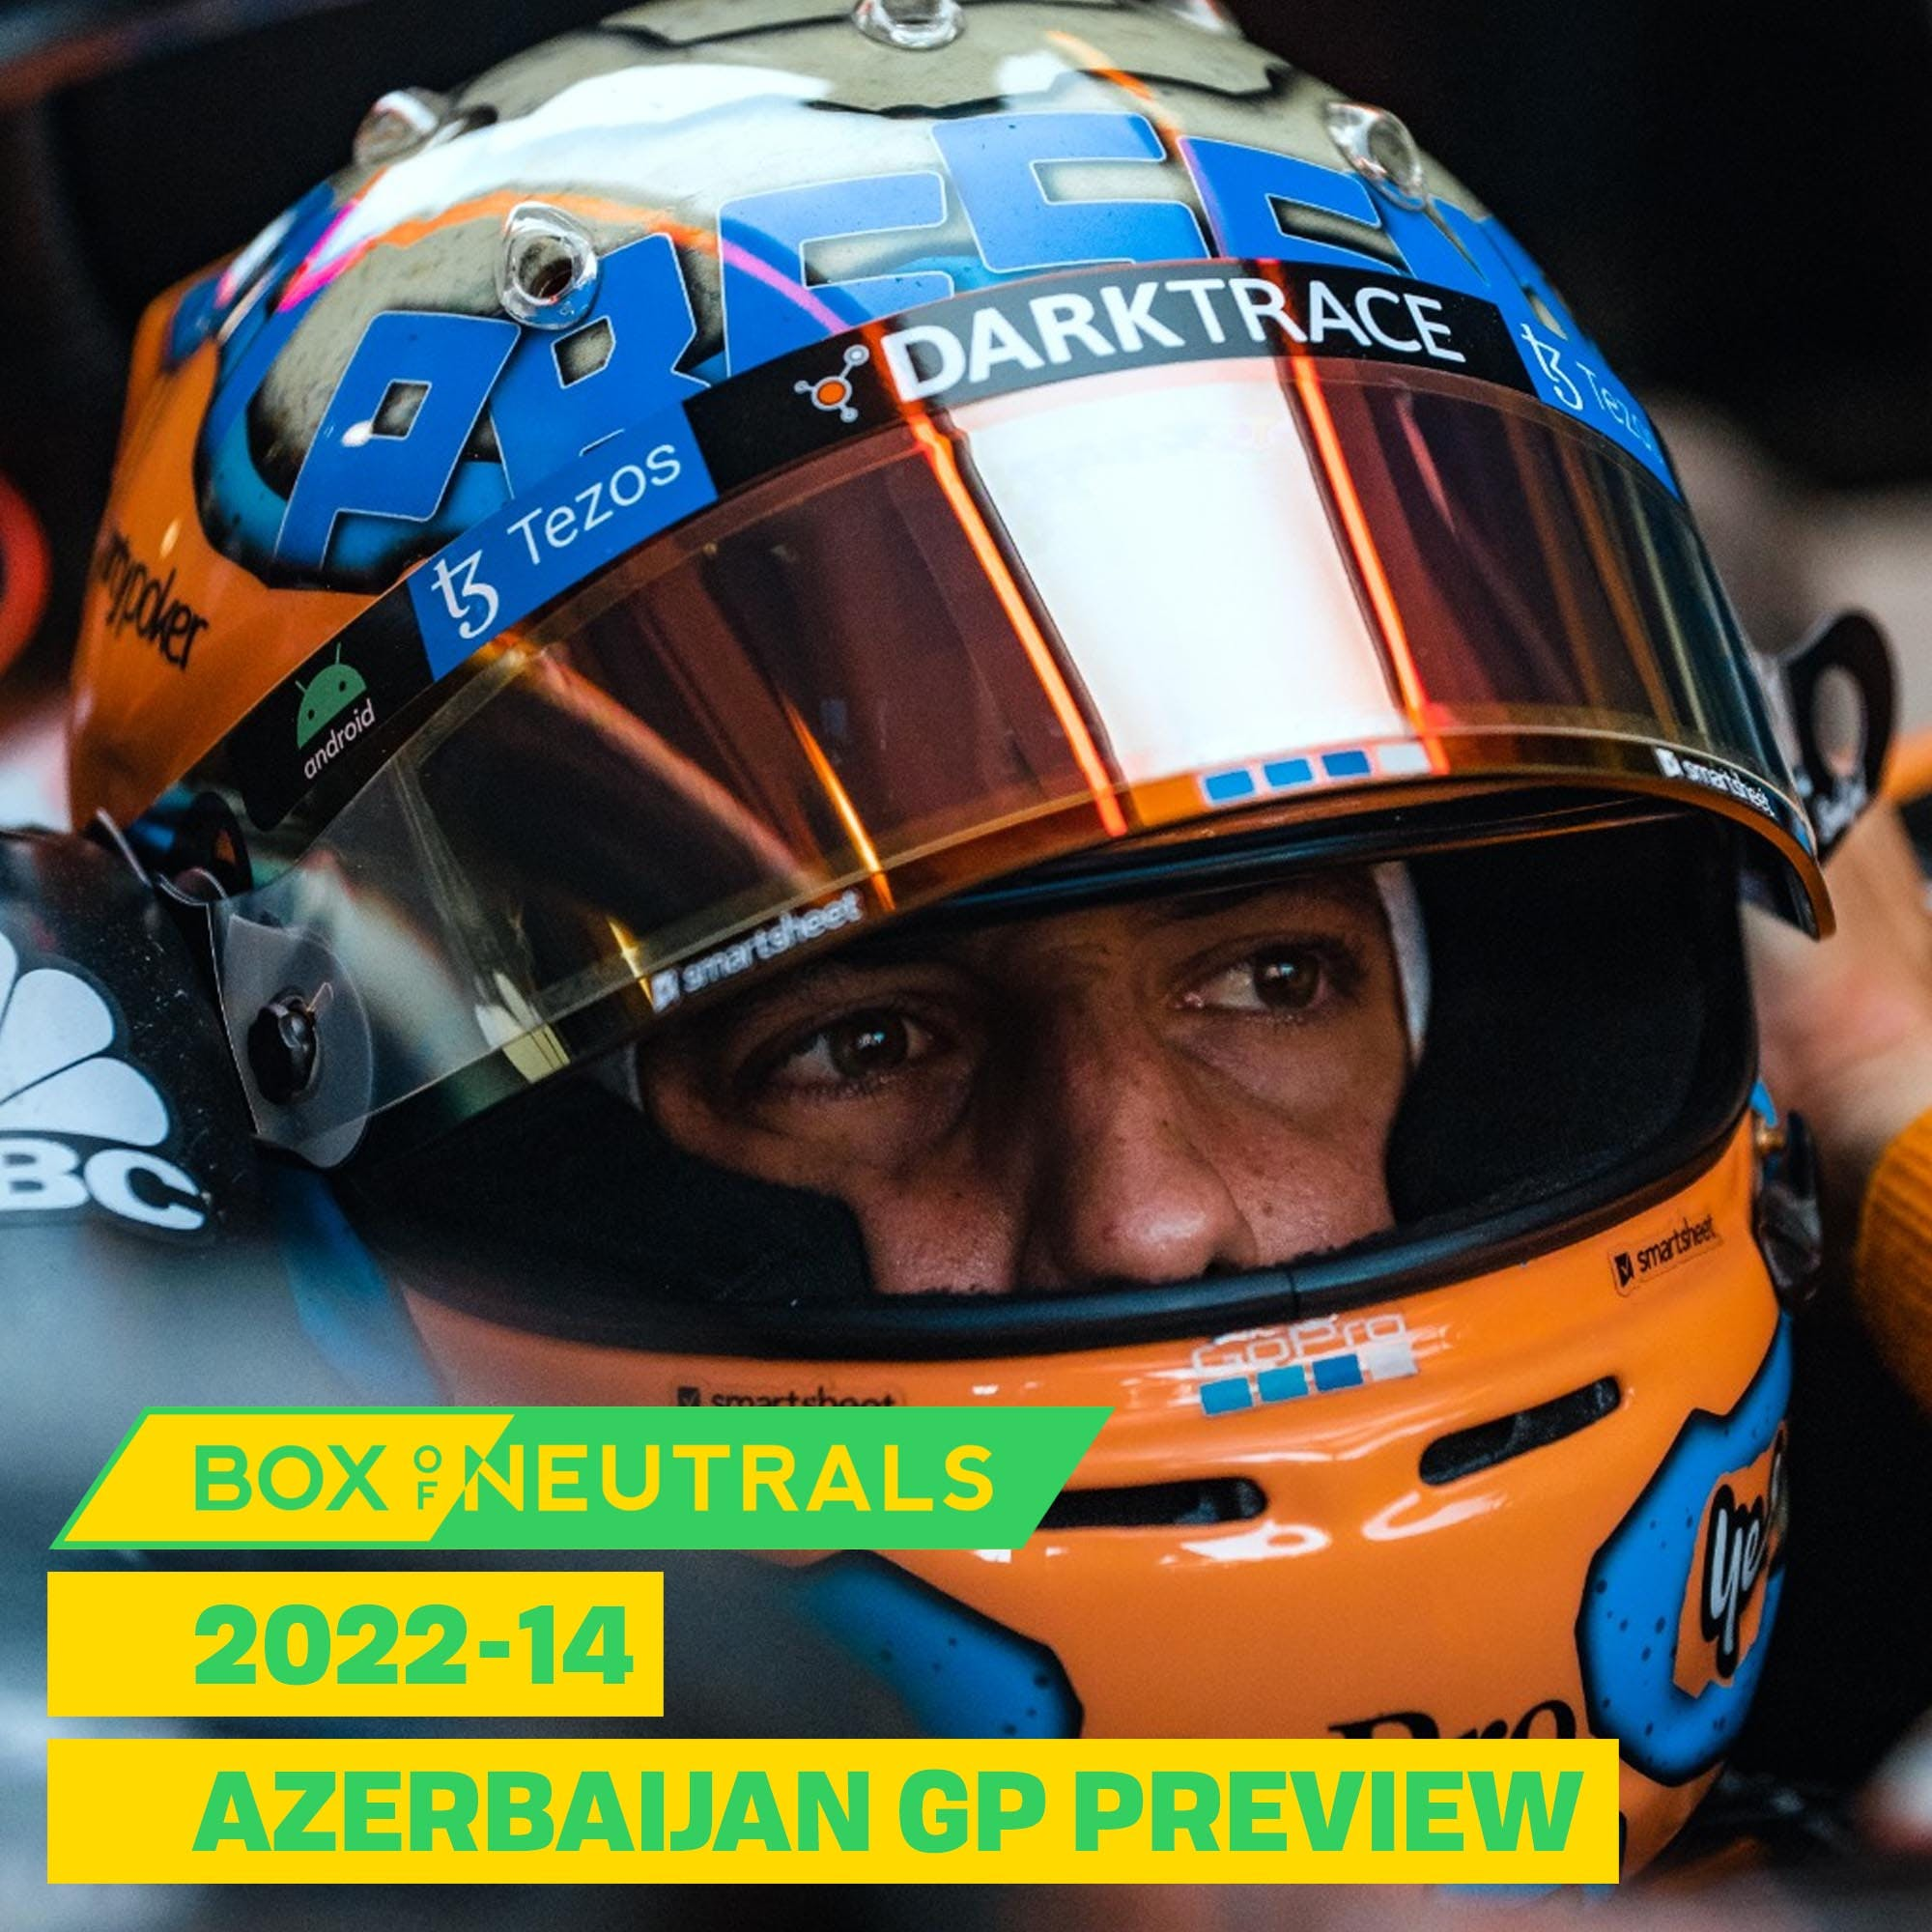 Azerbaijan GP Preview